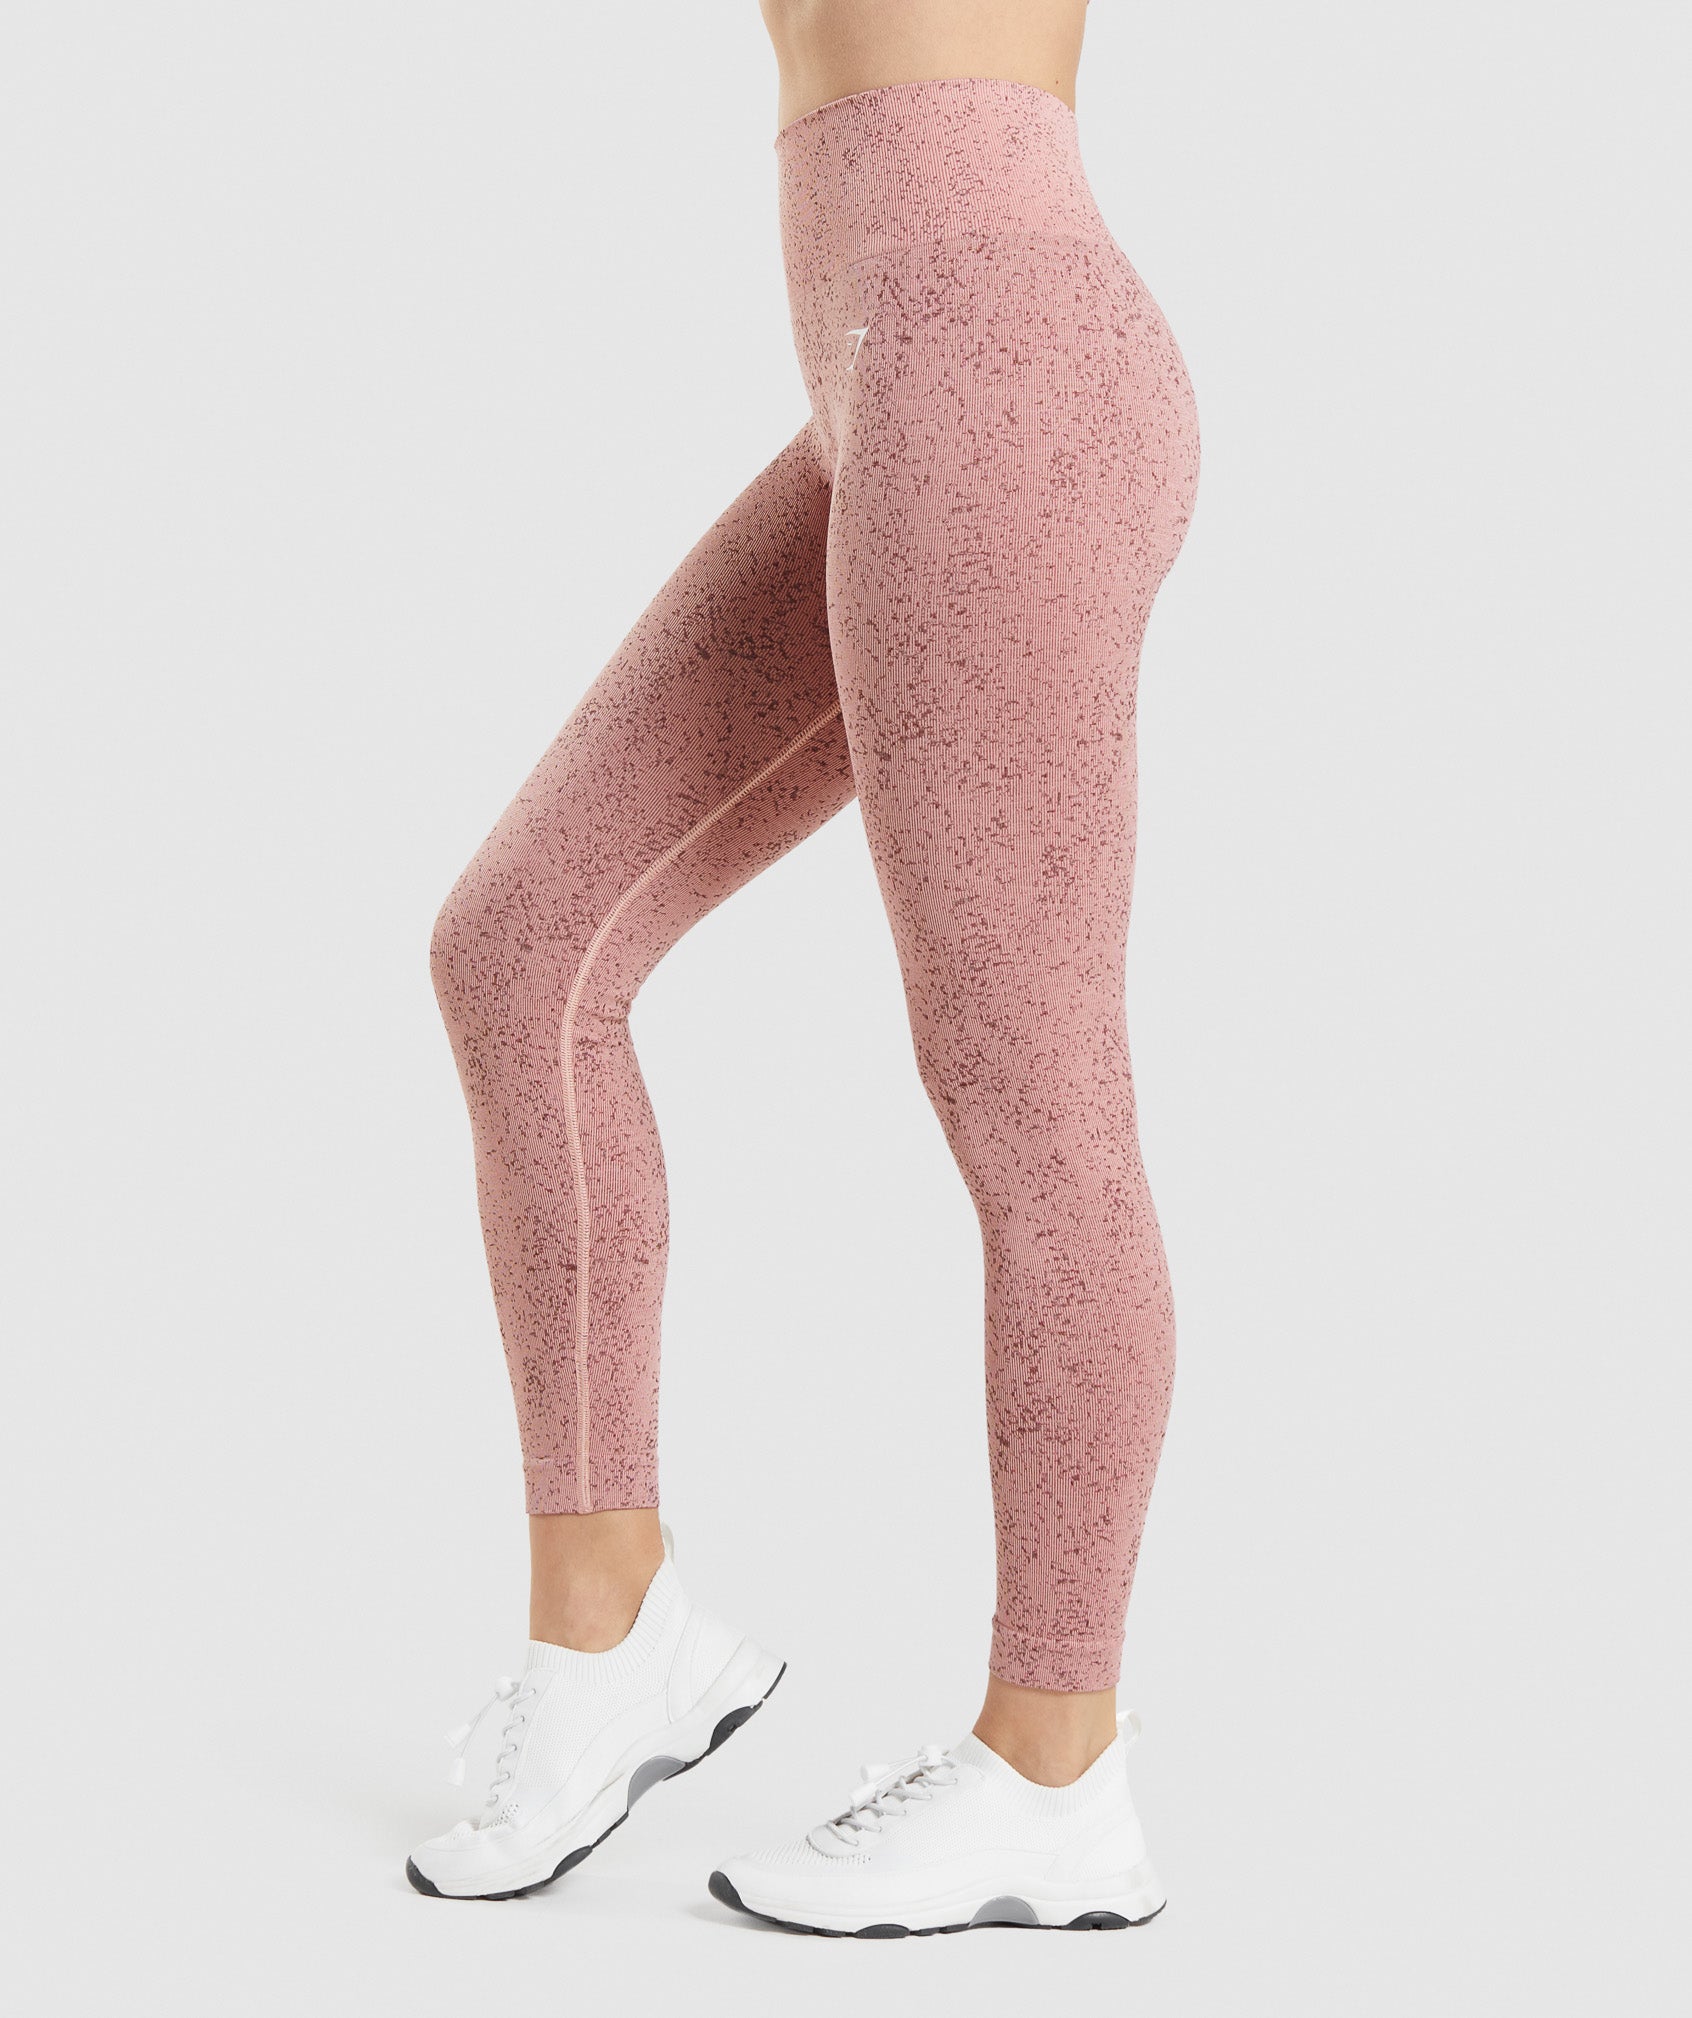 Gymshark Women’s Flex Seamless Leggings (Size Small)